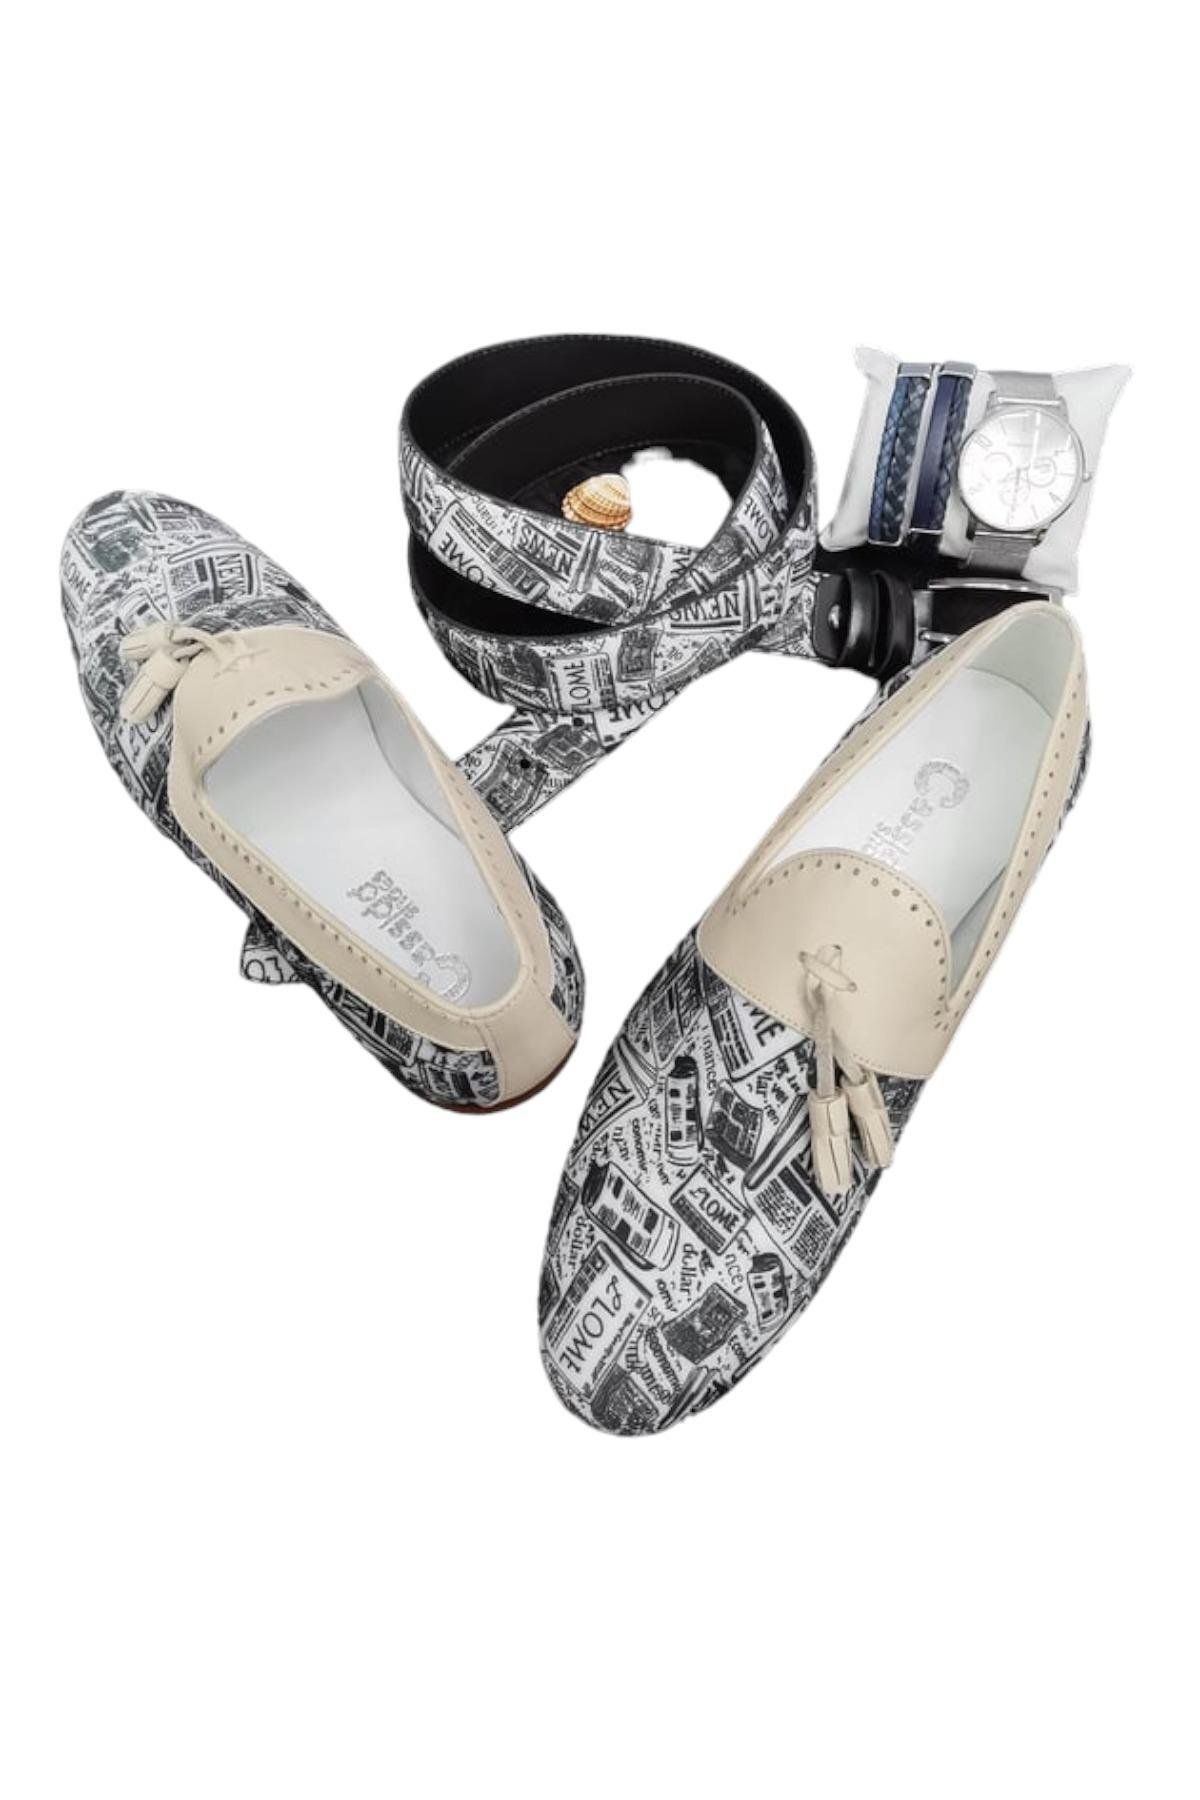 CassidoShoes Hakiki Deri Özel Tasarım Renkli Keten Ayakkabı Kemer Hediyeli 022-3245